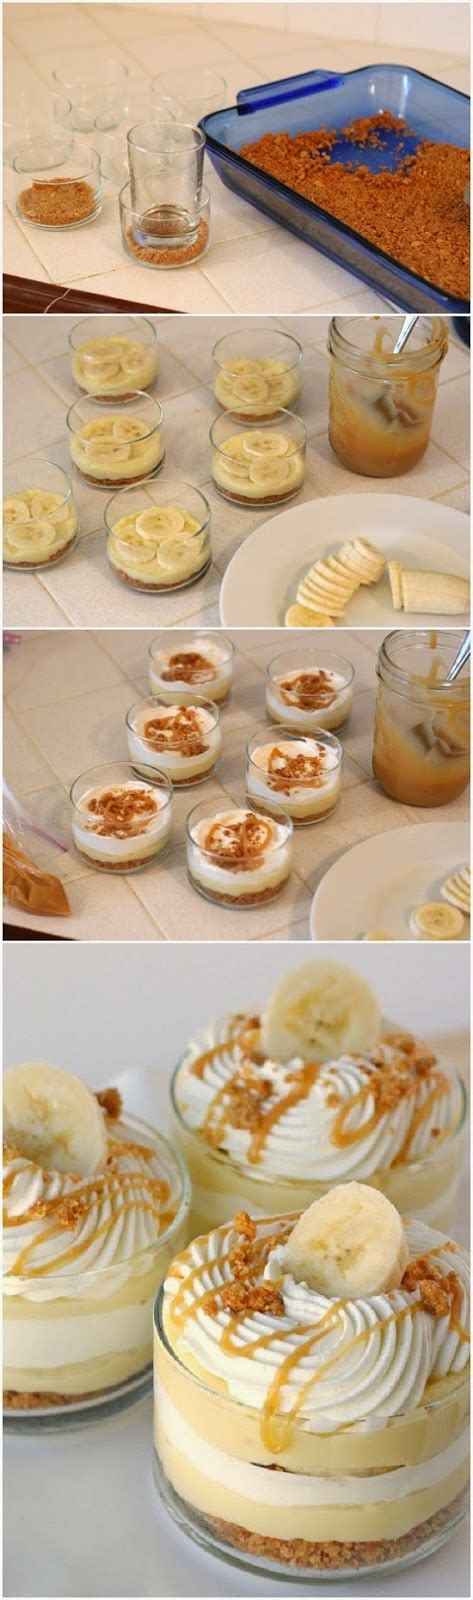 How To Make Banana Caramel Cream Dessert My Recipes